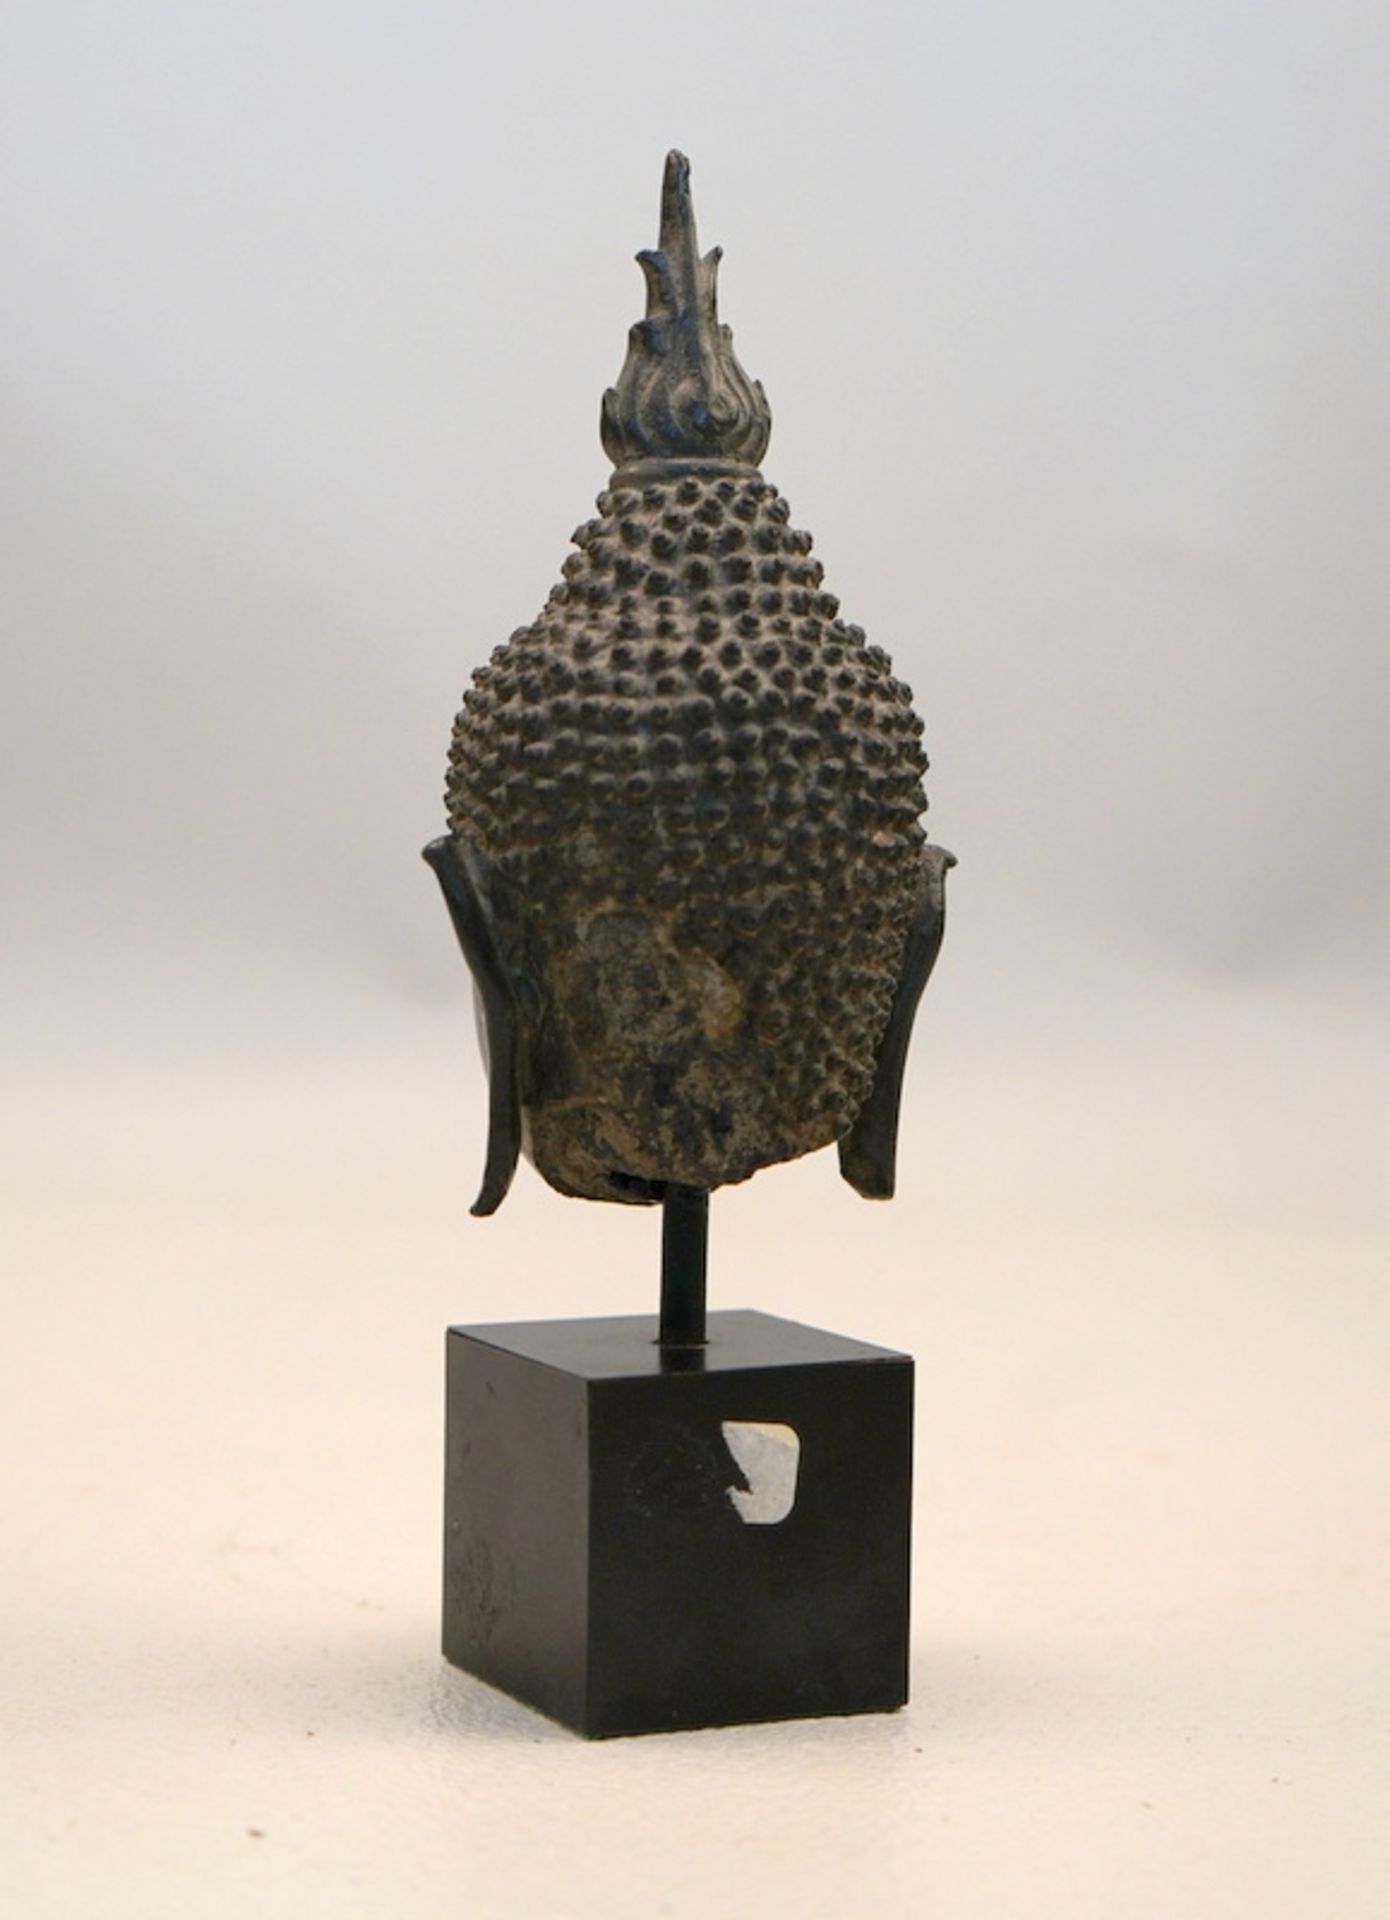 Bronze Buddha Kopf, Thailand, Ayutthaya Periode,Bronzeguss in verlorenene Form, Sandkern, - Image 2 of 2